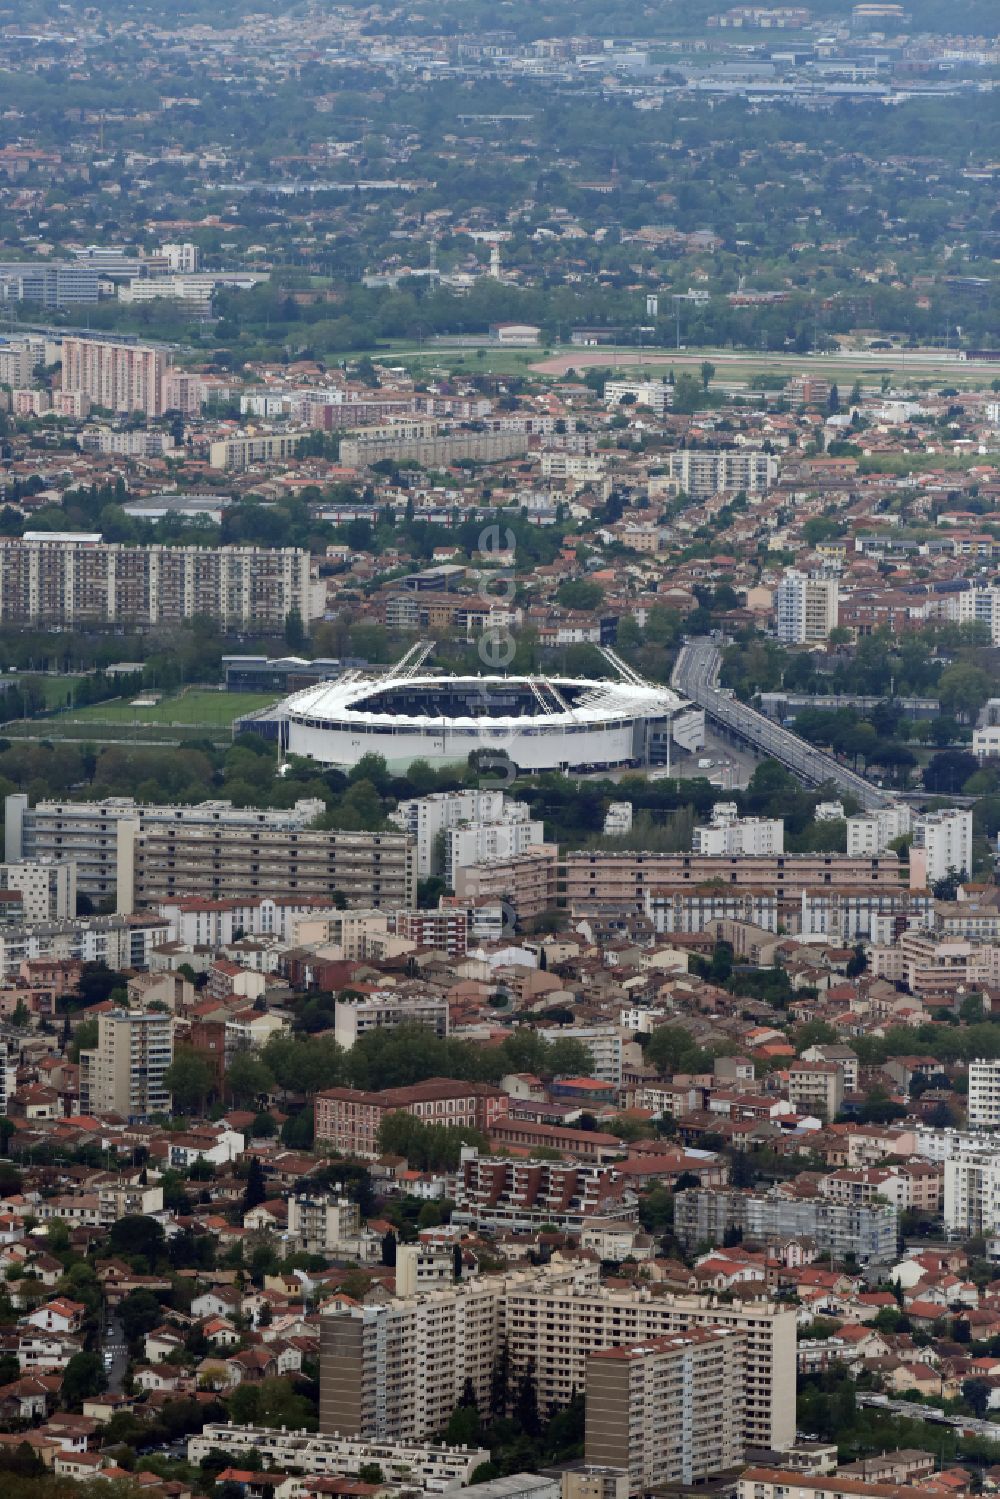 Luftbild Toulouse - Sportstätten-Gelände der Arena des Stadion Stadium TFC Municipal in Toulouse in Occitanie, Frankreich